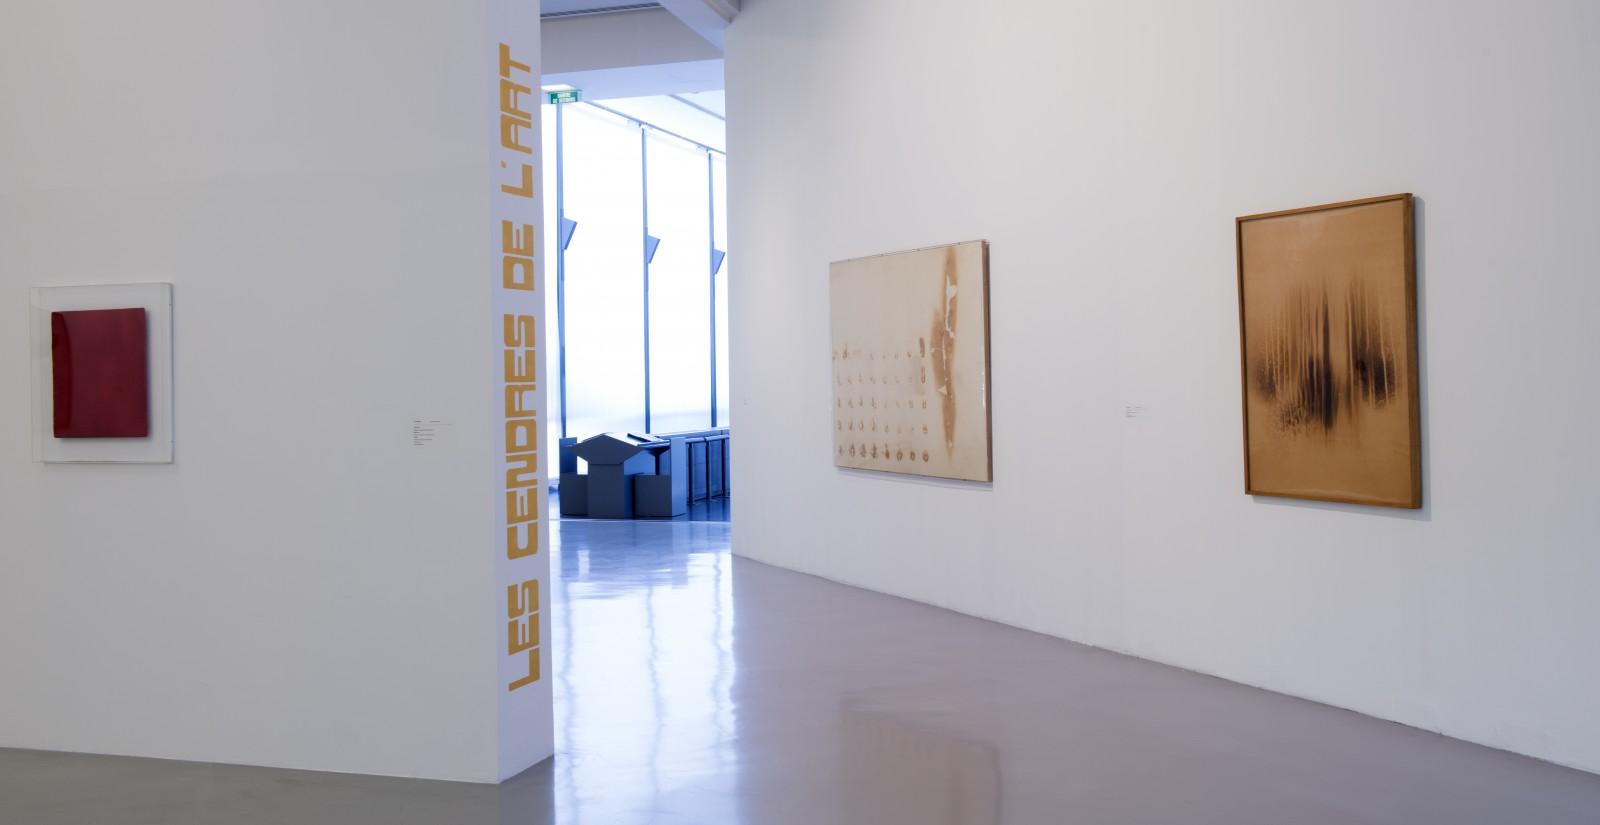 View of the exhibition "Collectors", MAMAC - Musée d'Art Moderne et d'Art Contemporain de Nice, 2015 (MP 9, F 55, F 71)